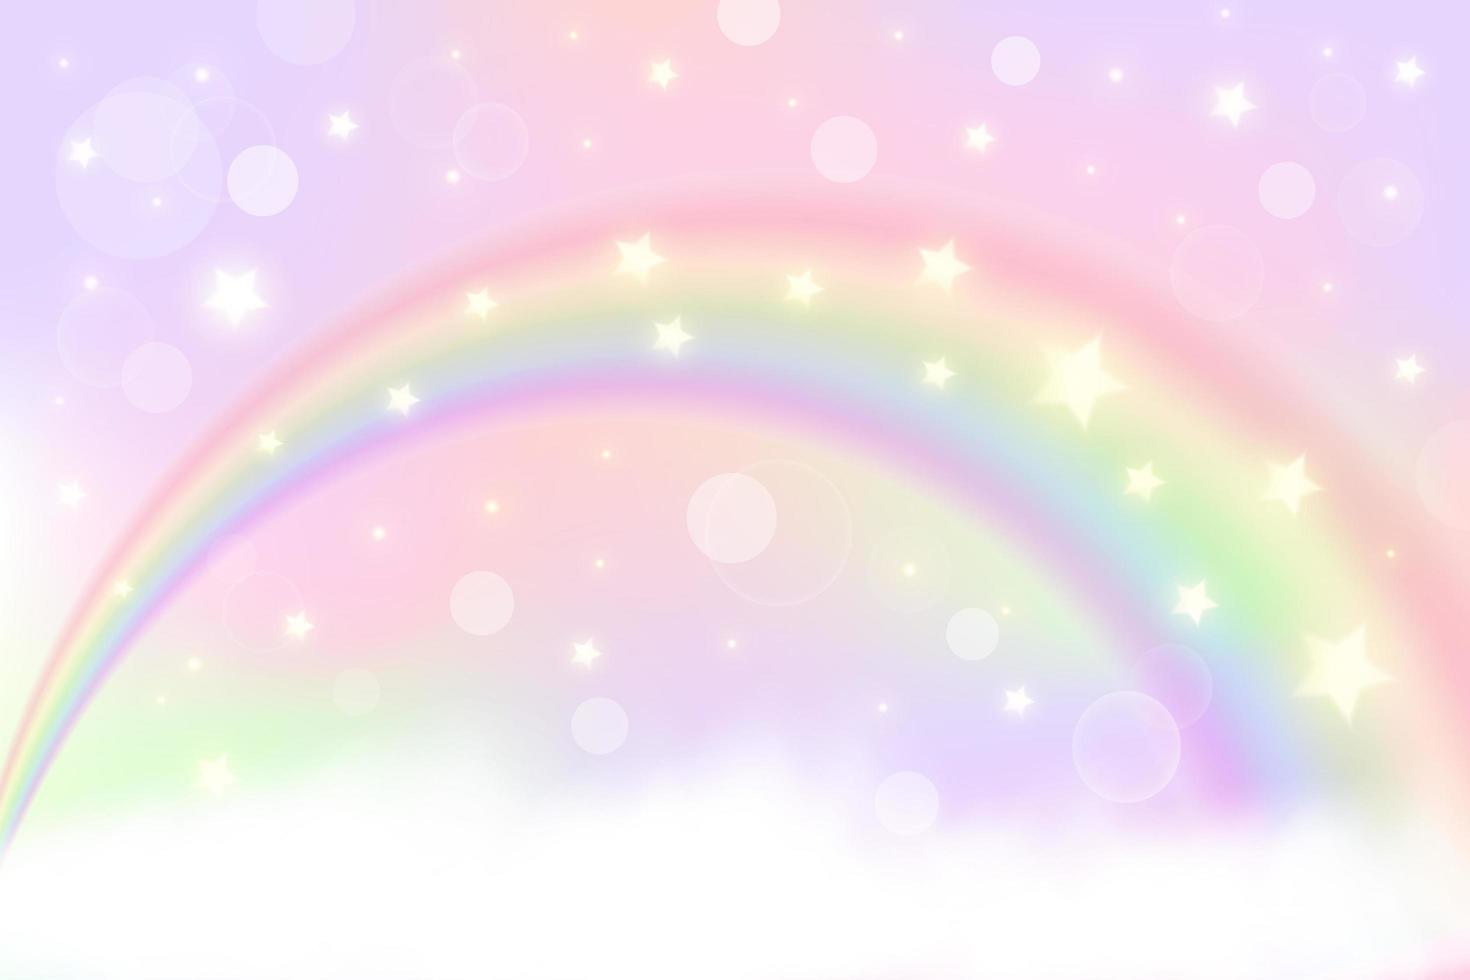 sfondo di unicorno arcobaleno fantasia olografica con nuvole. cielo color pastello. paesaggio magico, modello astratto favoloso. simpatica carta da parati con caramelle. vettore. vettore